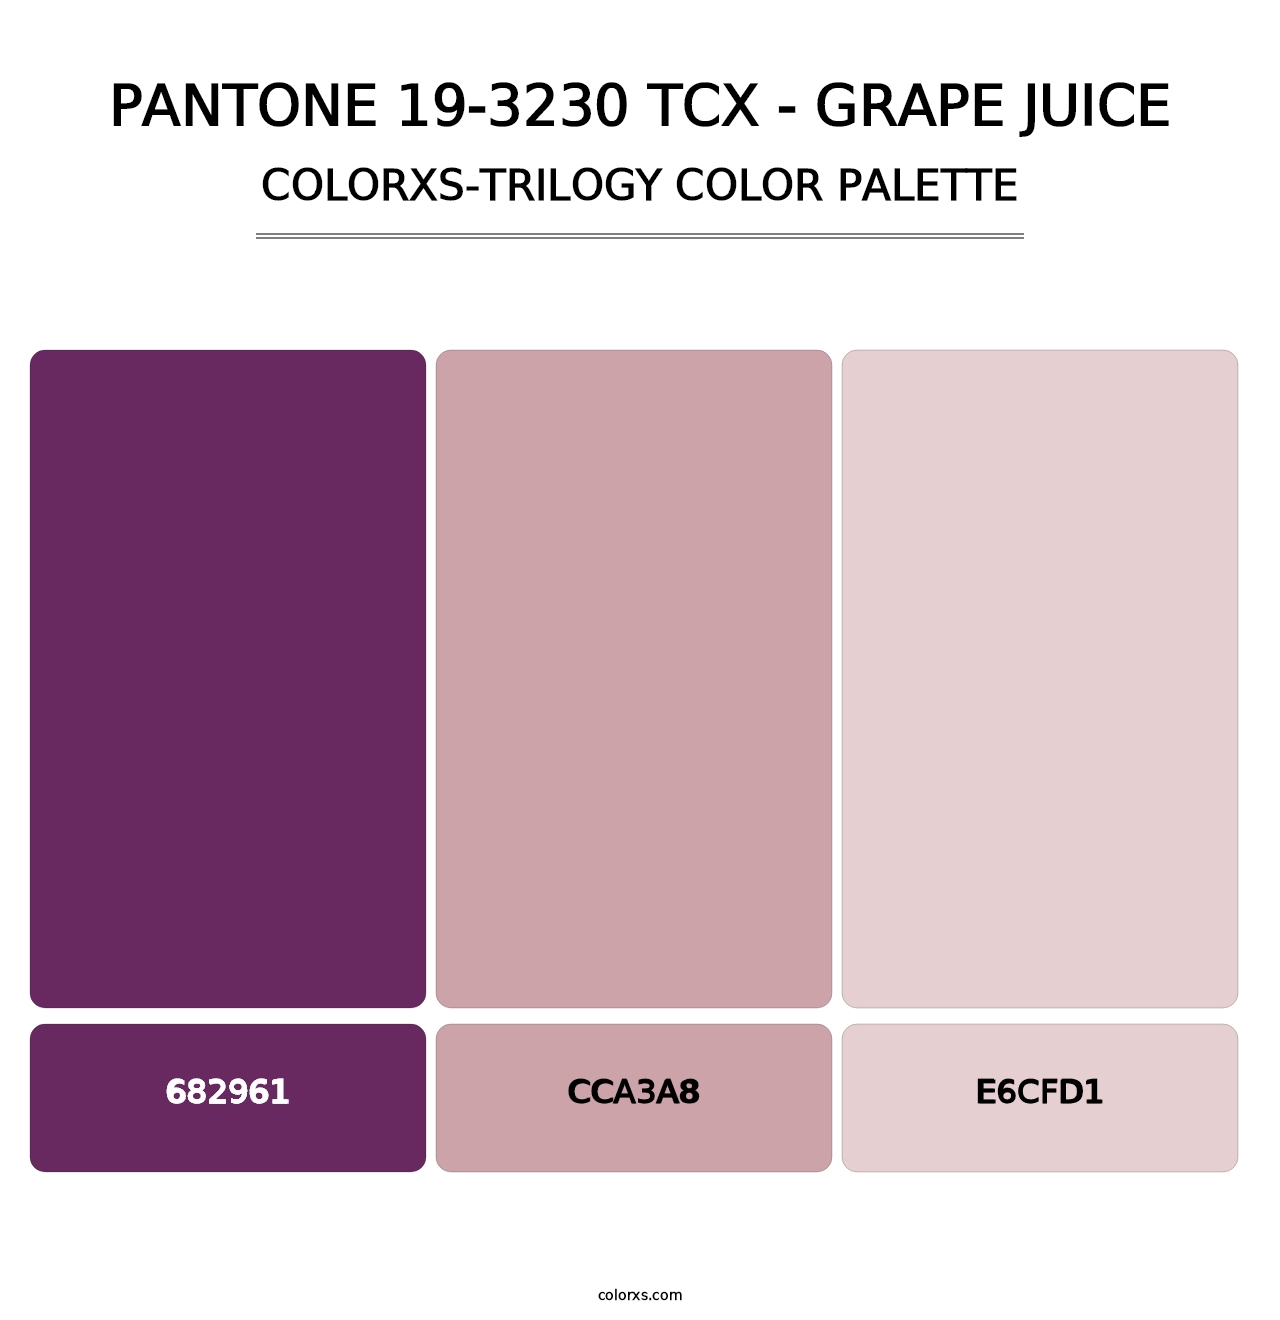 PANTONE 19-3230 TCX - Grape Juice - Colorxs Trilogy Palette